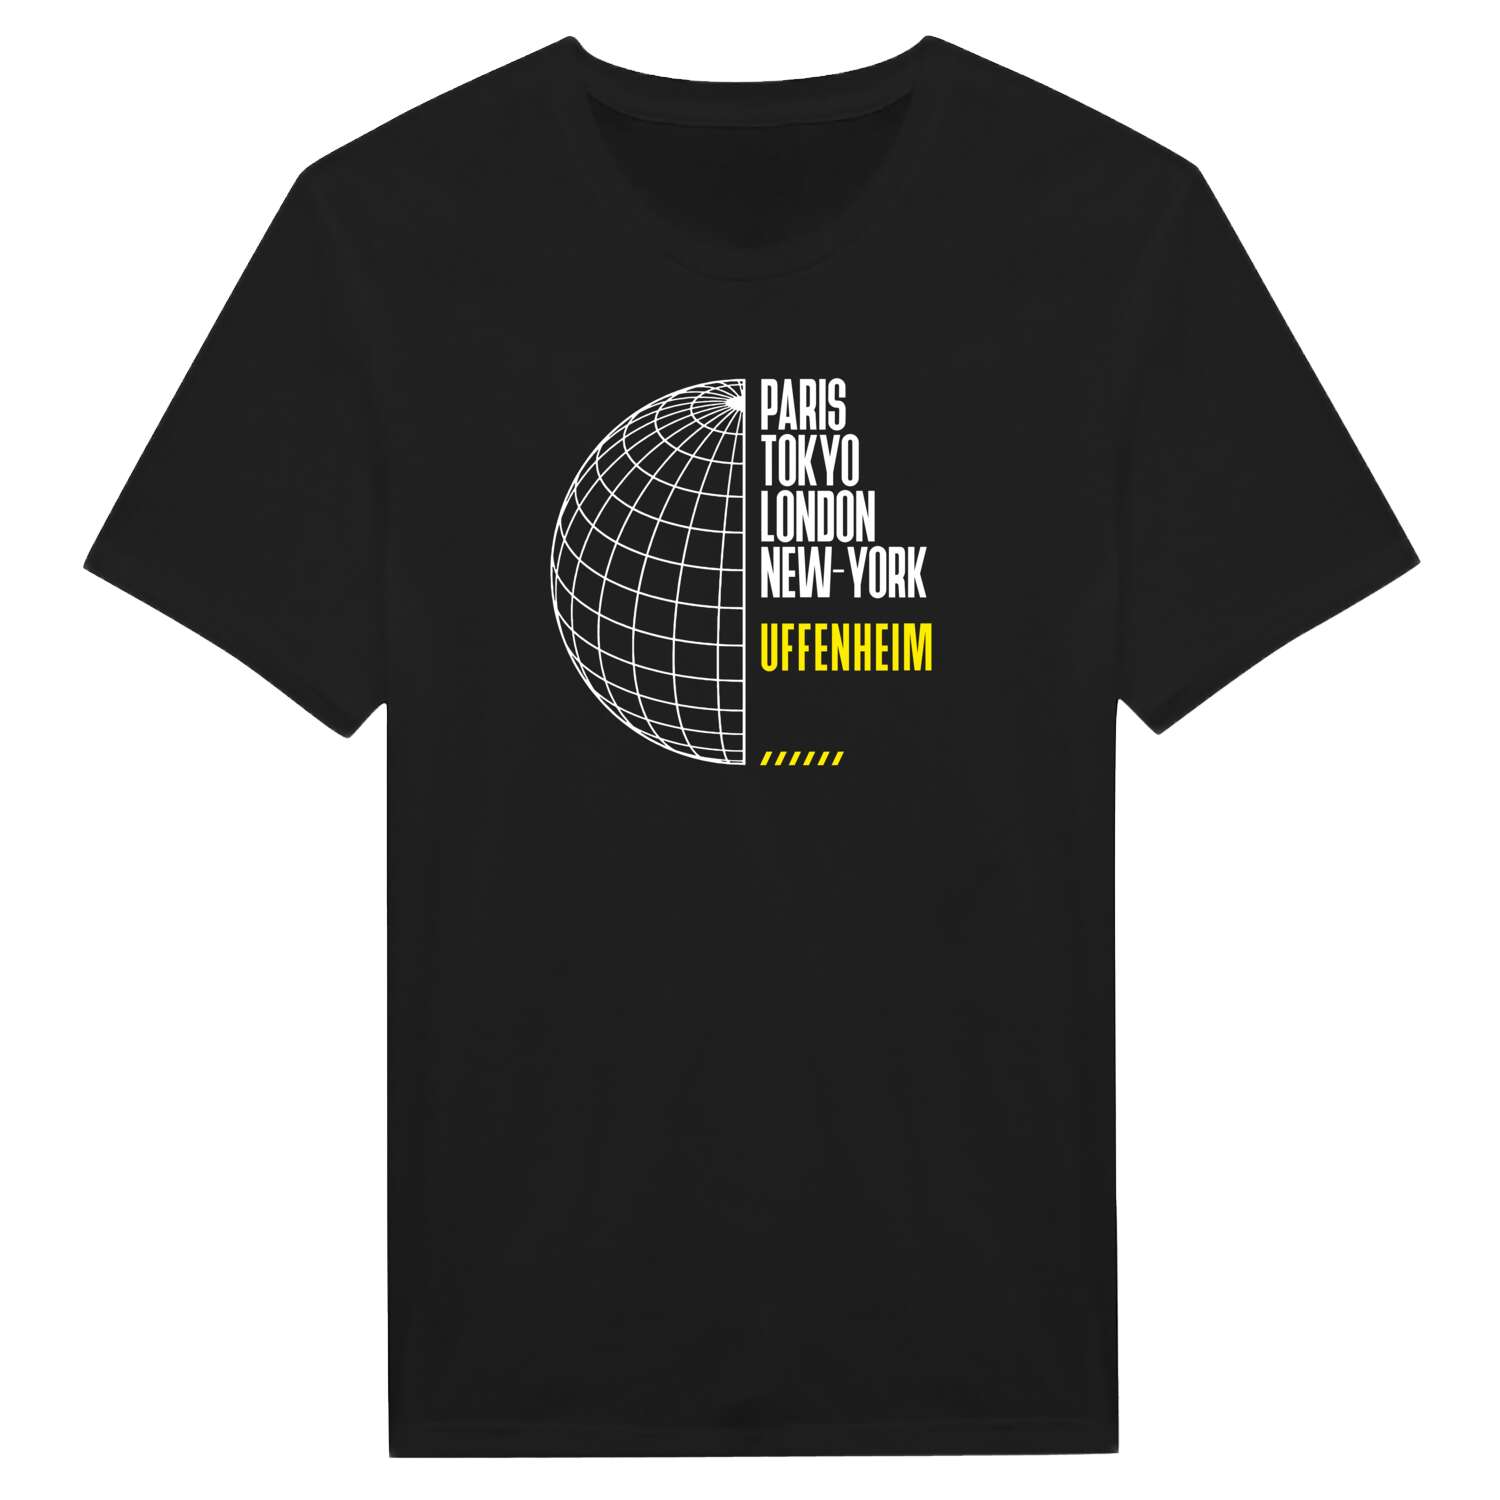 Uffenheim T-Shirt »Paris Tokyo London«